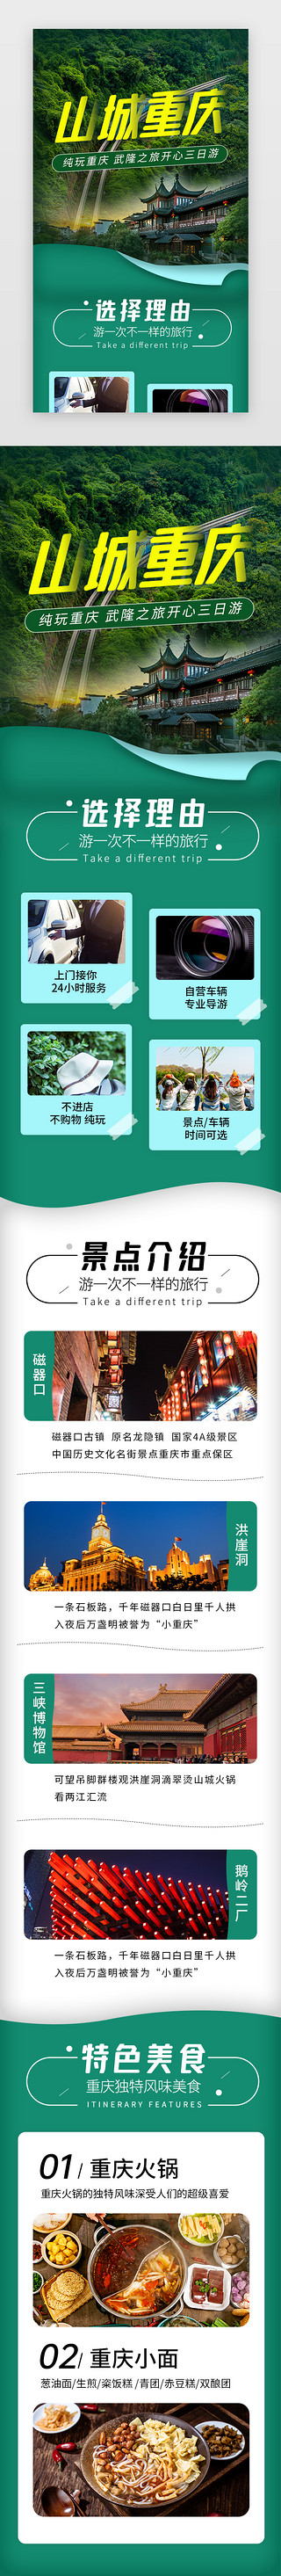 日照旅游UI设计素材_山城重庆旅游景点介绍H5长图